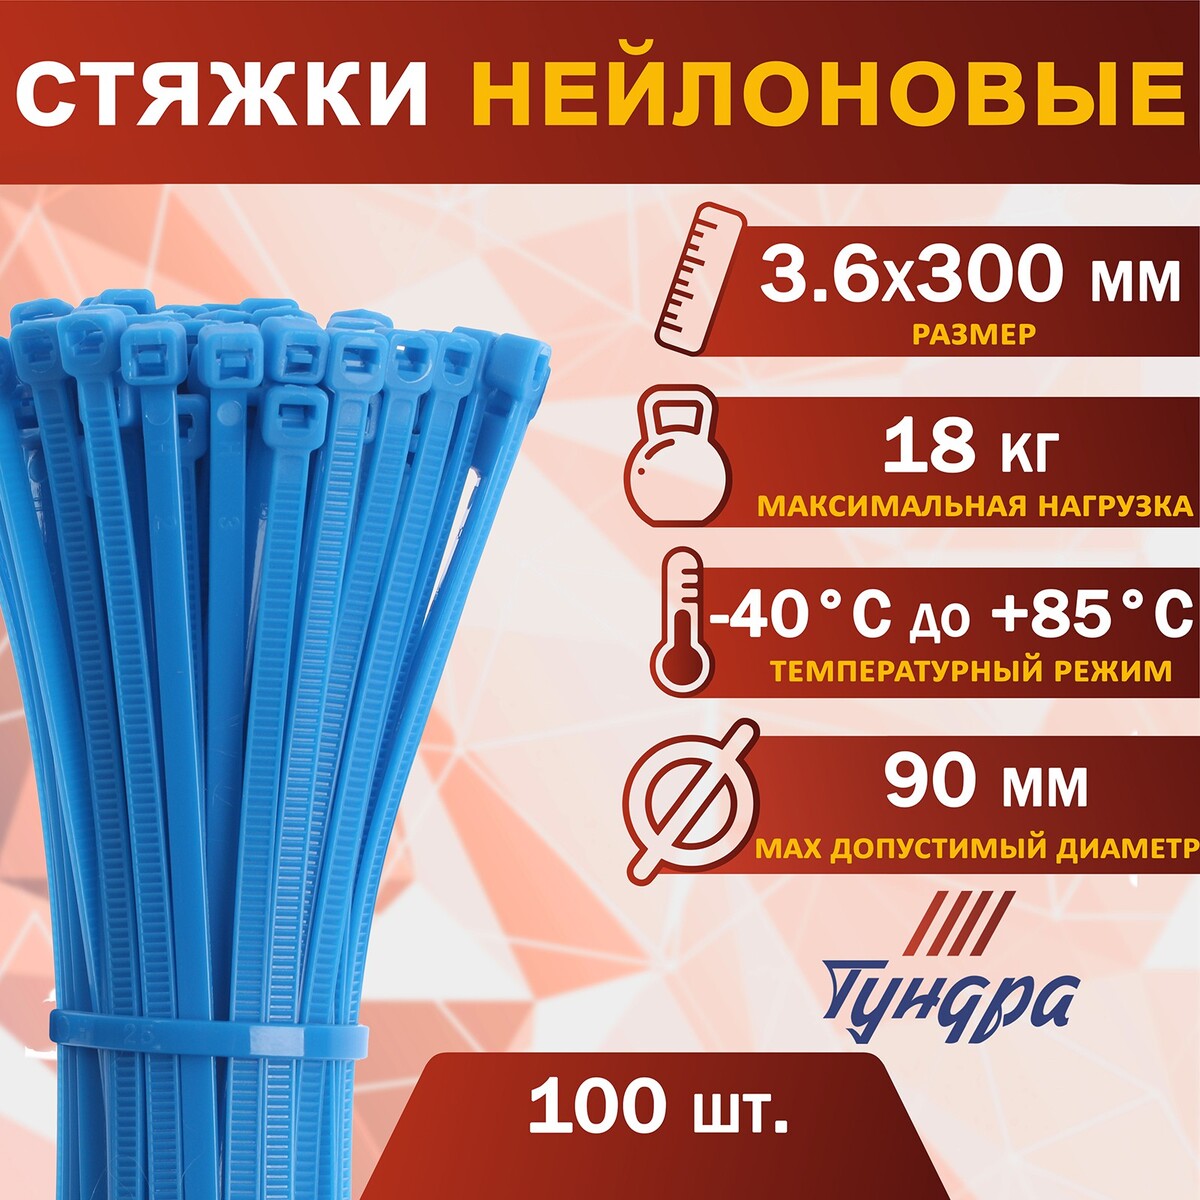 Хомут нейлоновый пластик тундра krep, для стяжки, 3.6х300 мм, цвет синий, в уп. 100 шт хомут нейлоновый пластик тундра krep для стяжки 3 6х300 мм синий в уп 100 шт